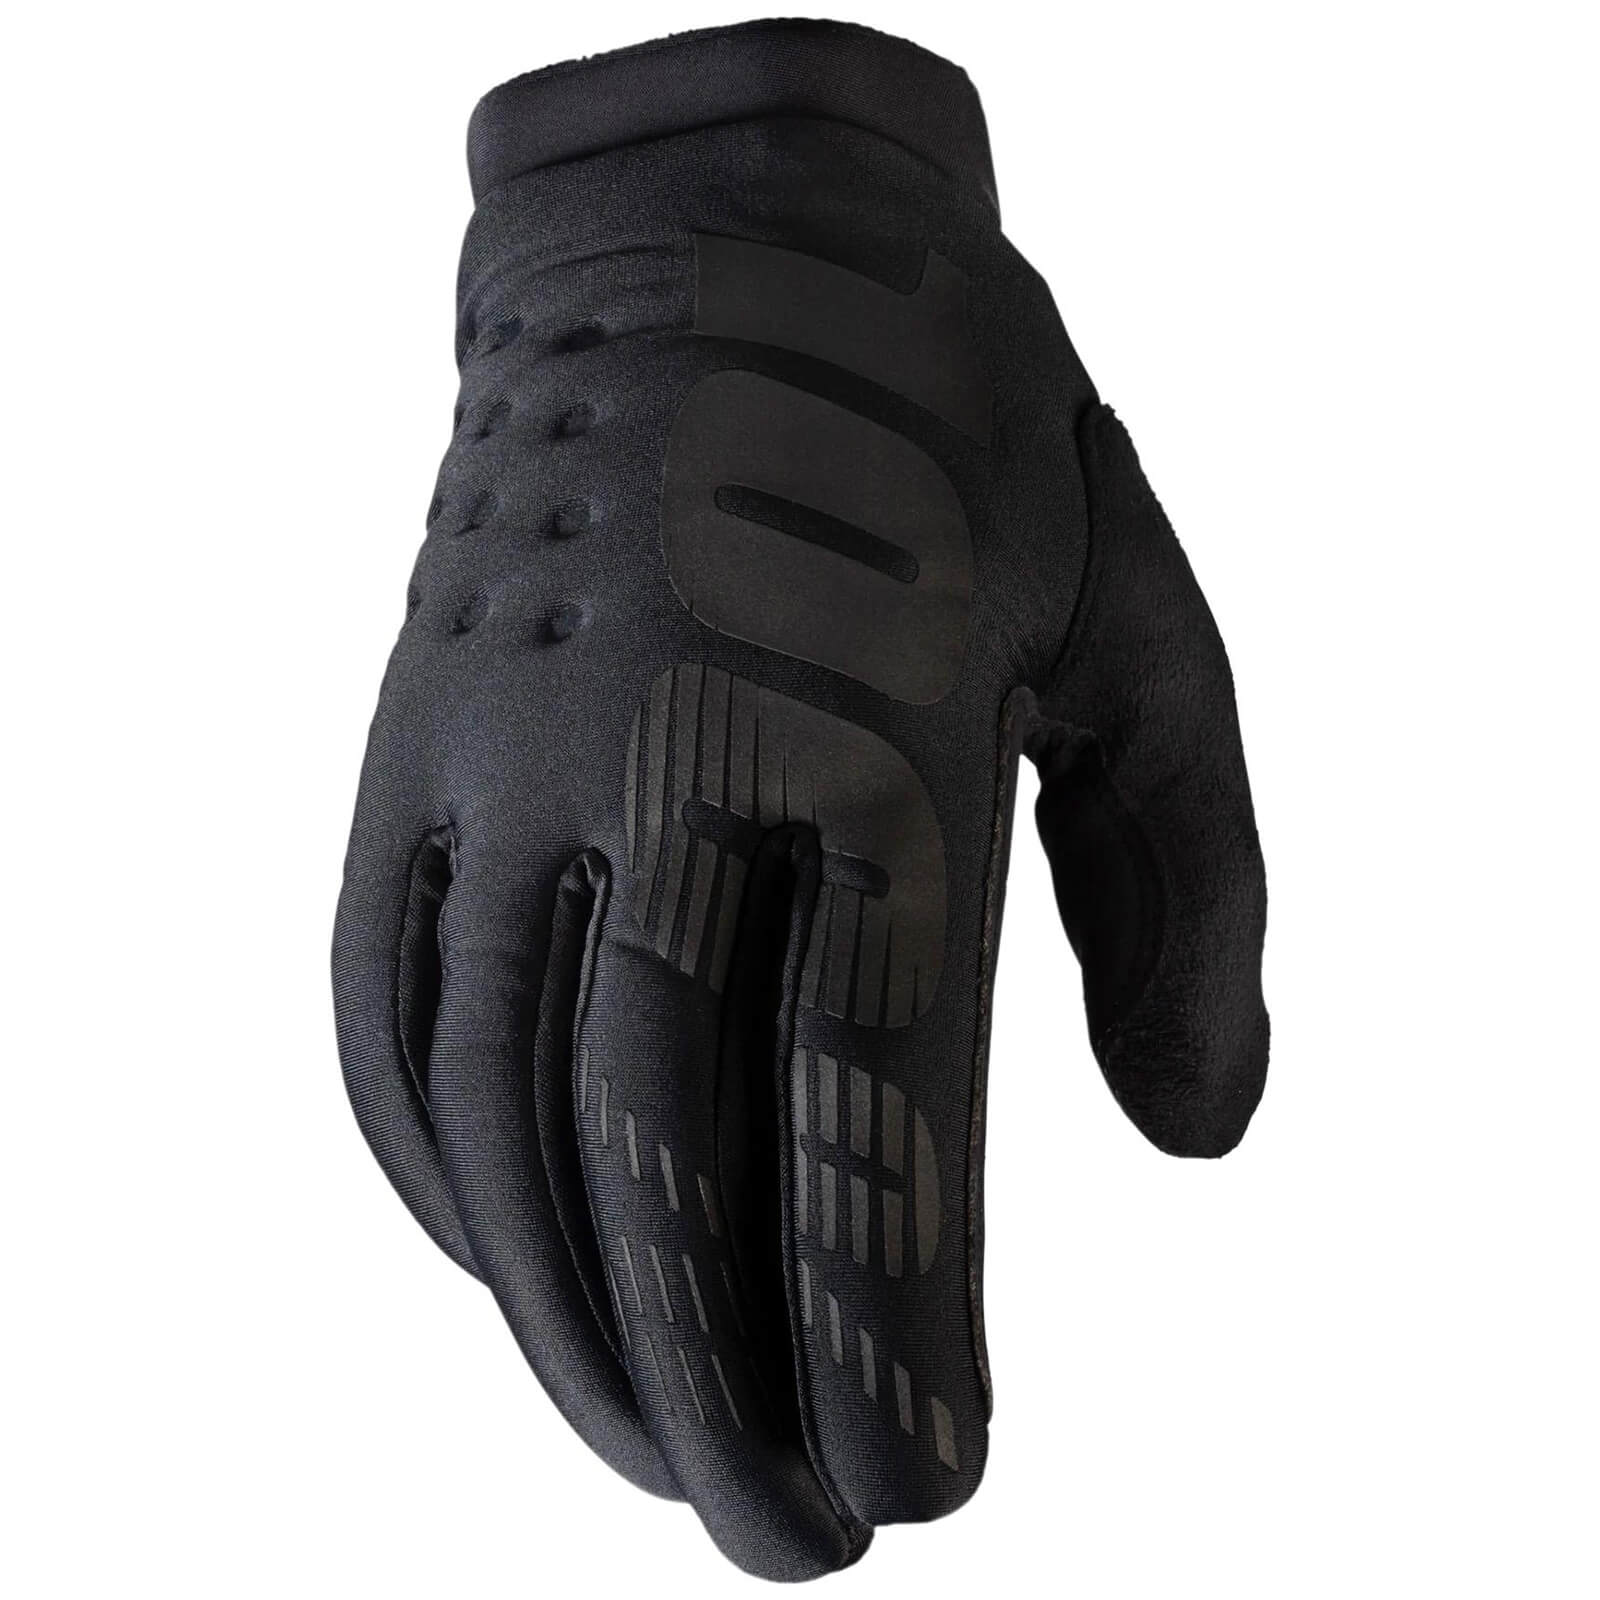 Image of 100% Brisker Cold Weather Gloves - Black / Grey / 2XLarge